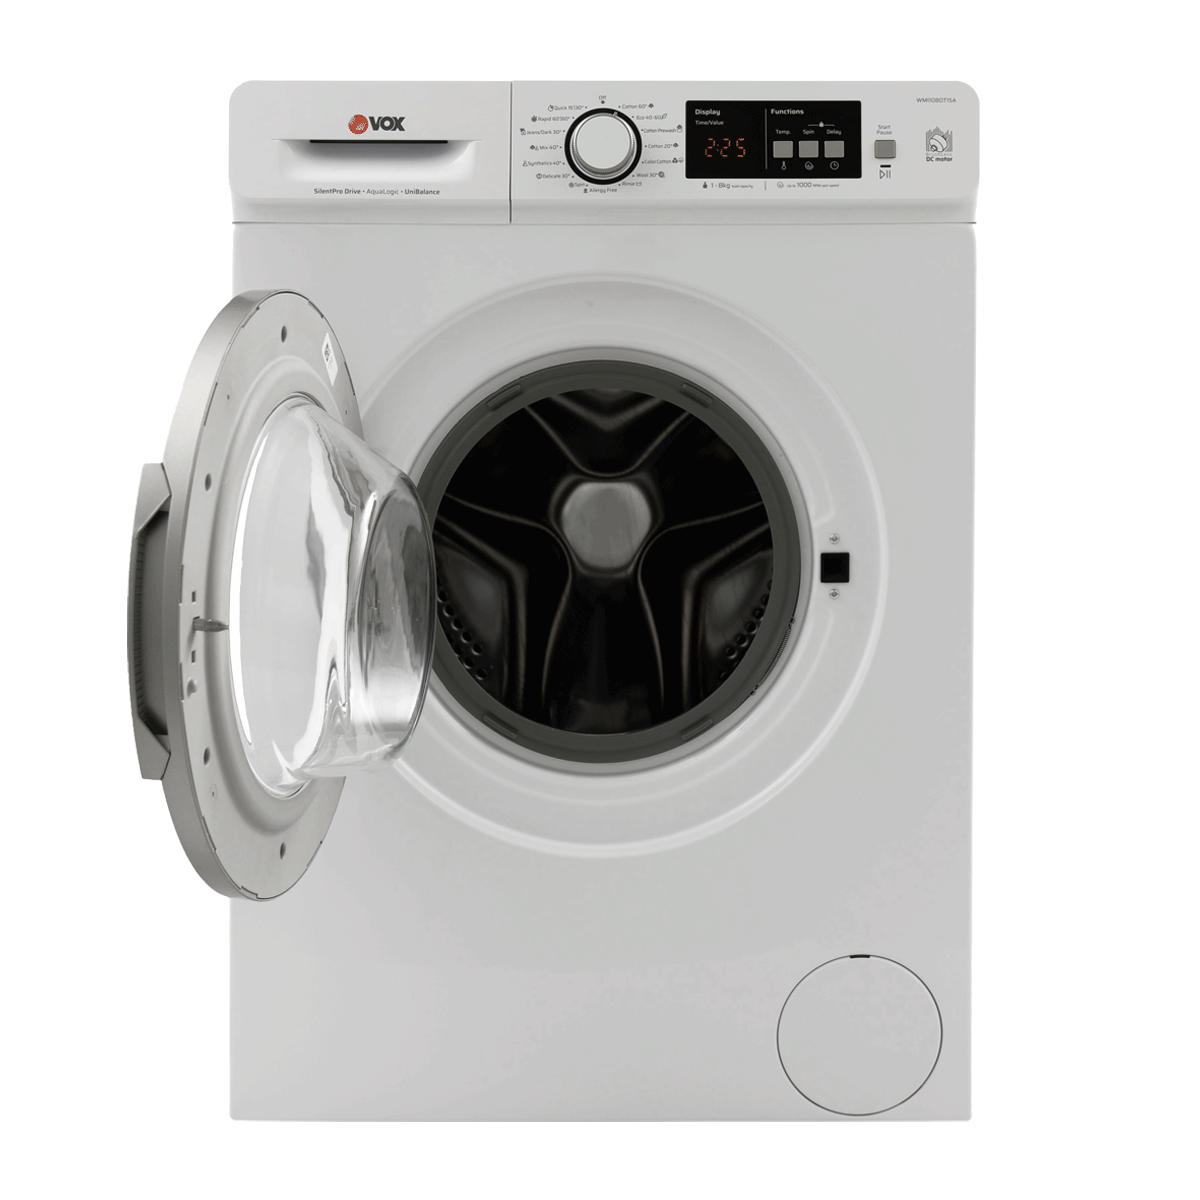 Washing machine WMI1080-T15A 